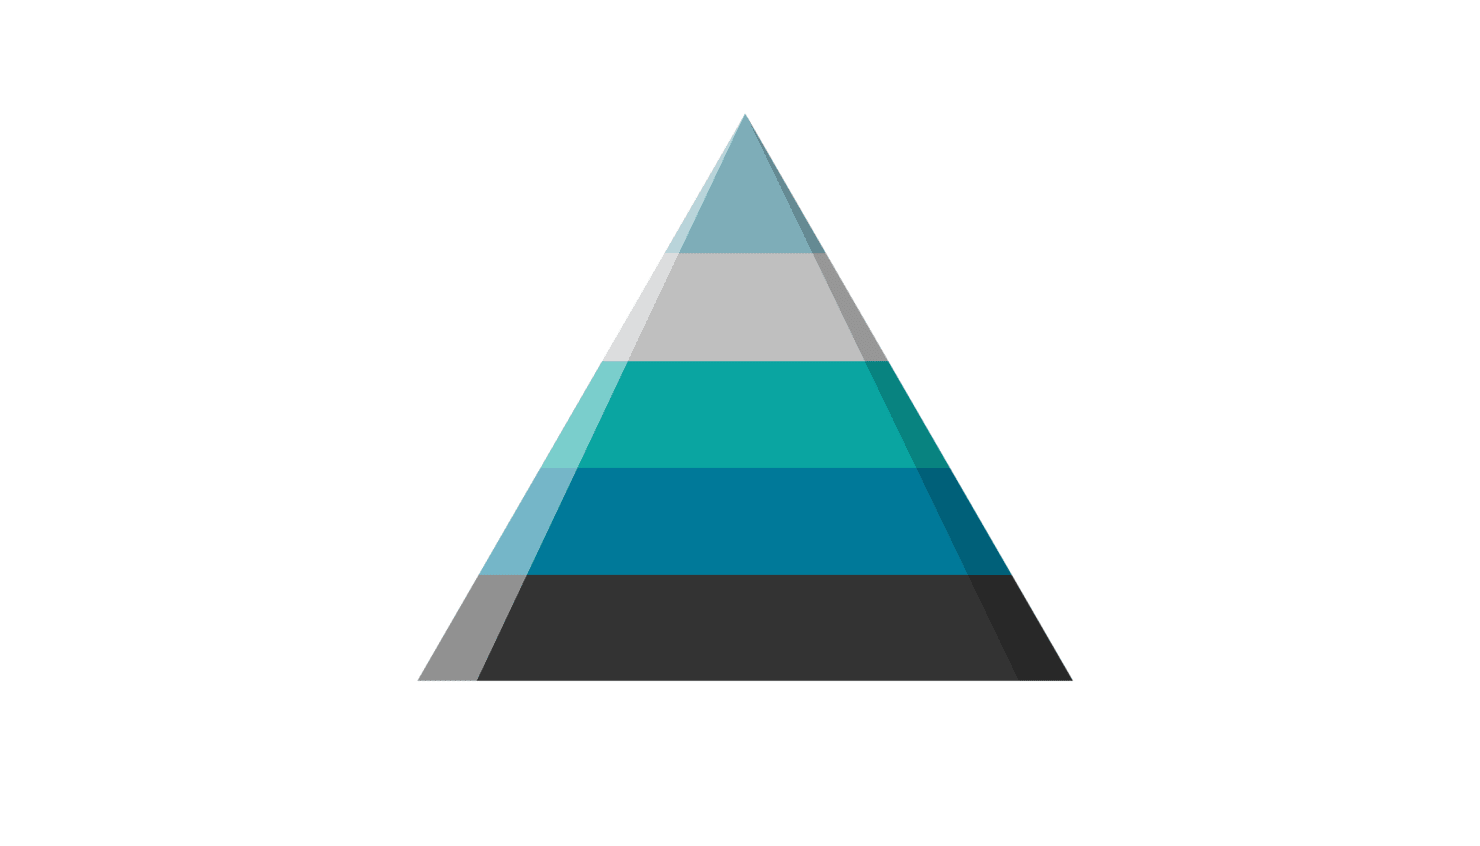 Piramida Maslowa